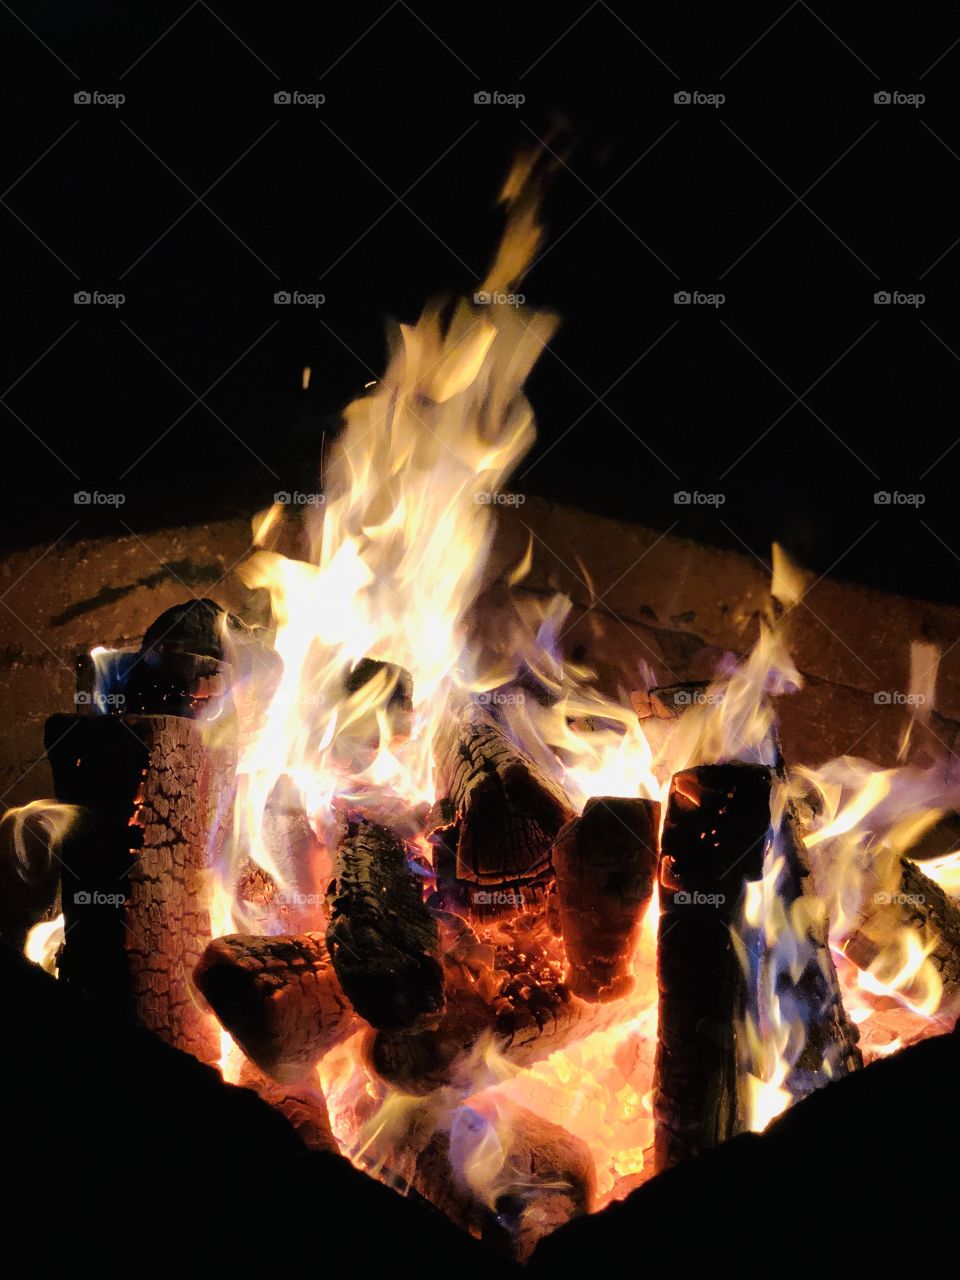 A roaring backyard fire keeps us warm on a December night in Minnesota.